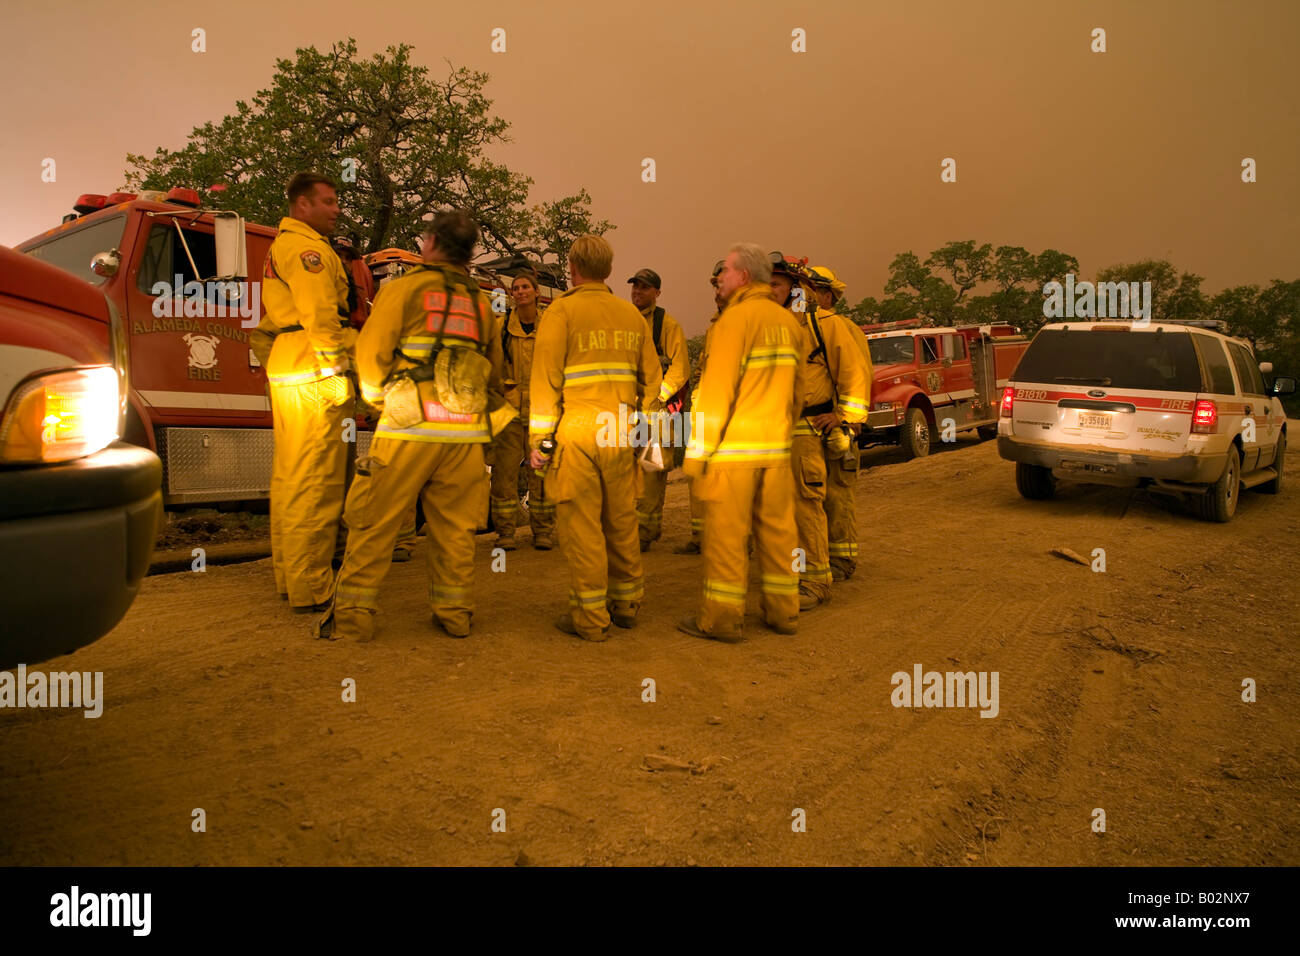 50.000 acri di California wildfire presso Henry Coe stato parco a sud di San Jose combattuto da CAL Fire CDF Foto Stock